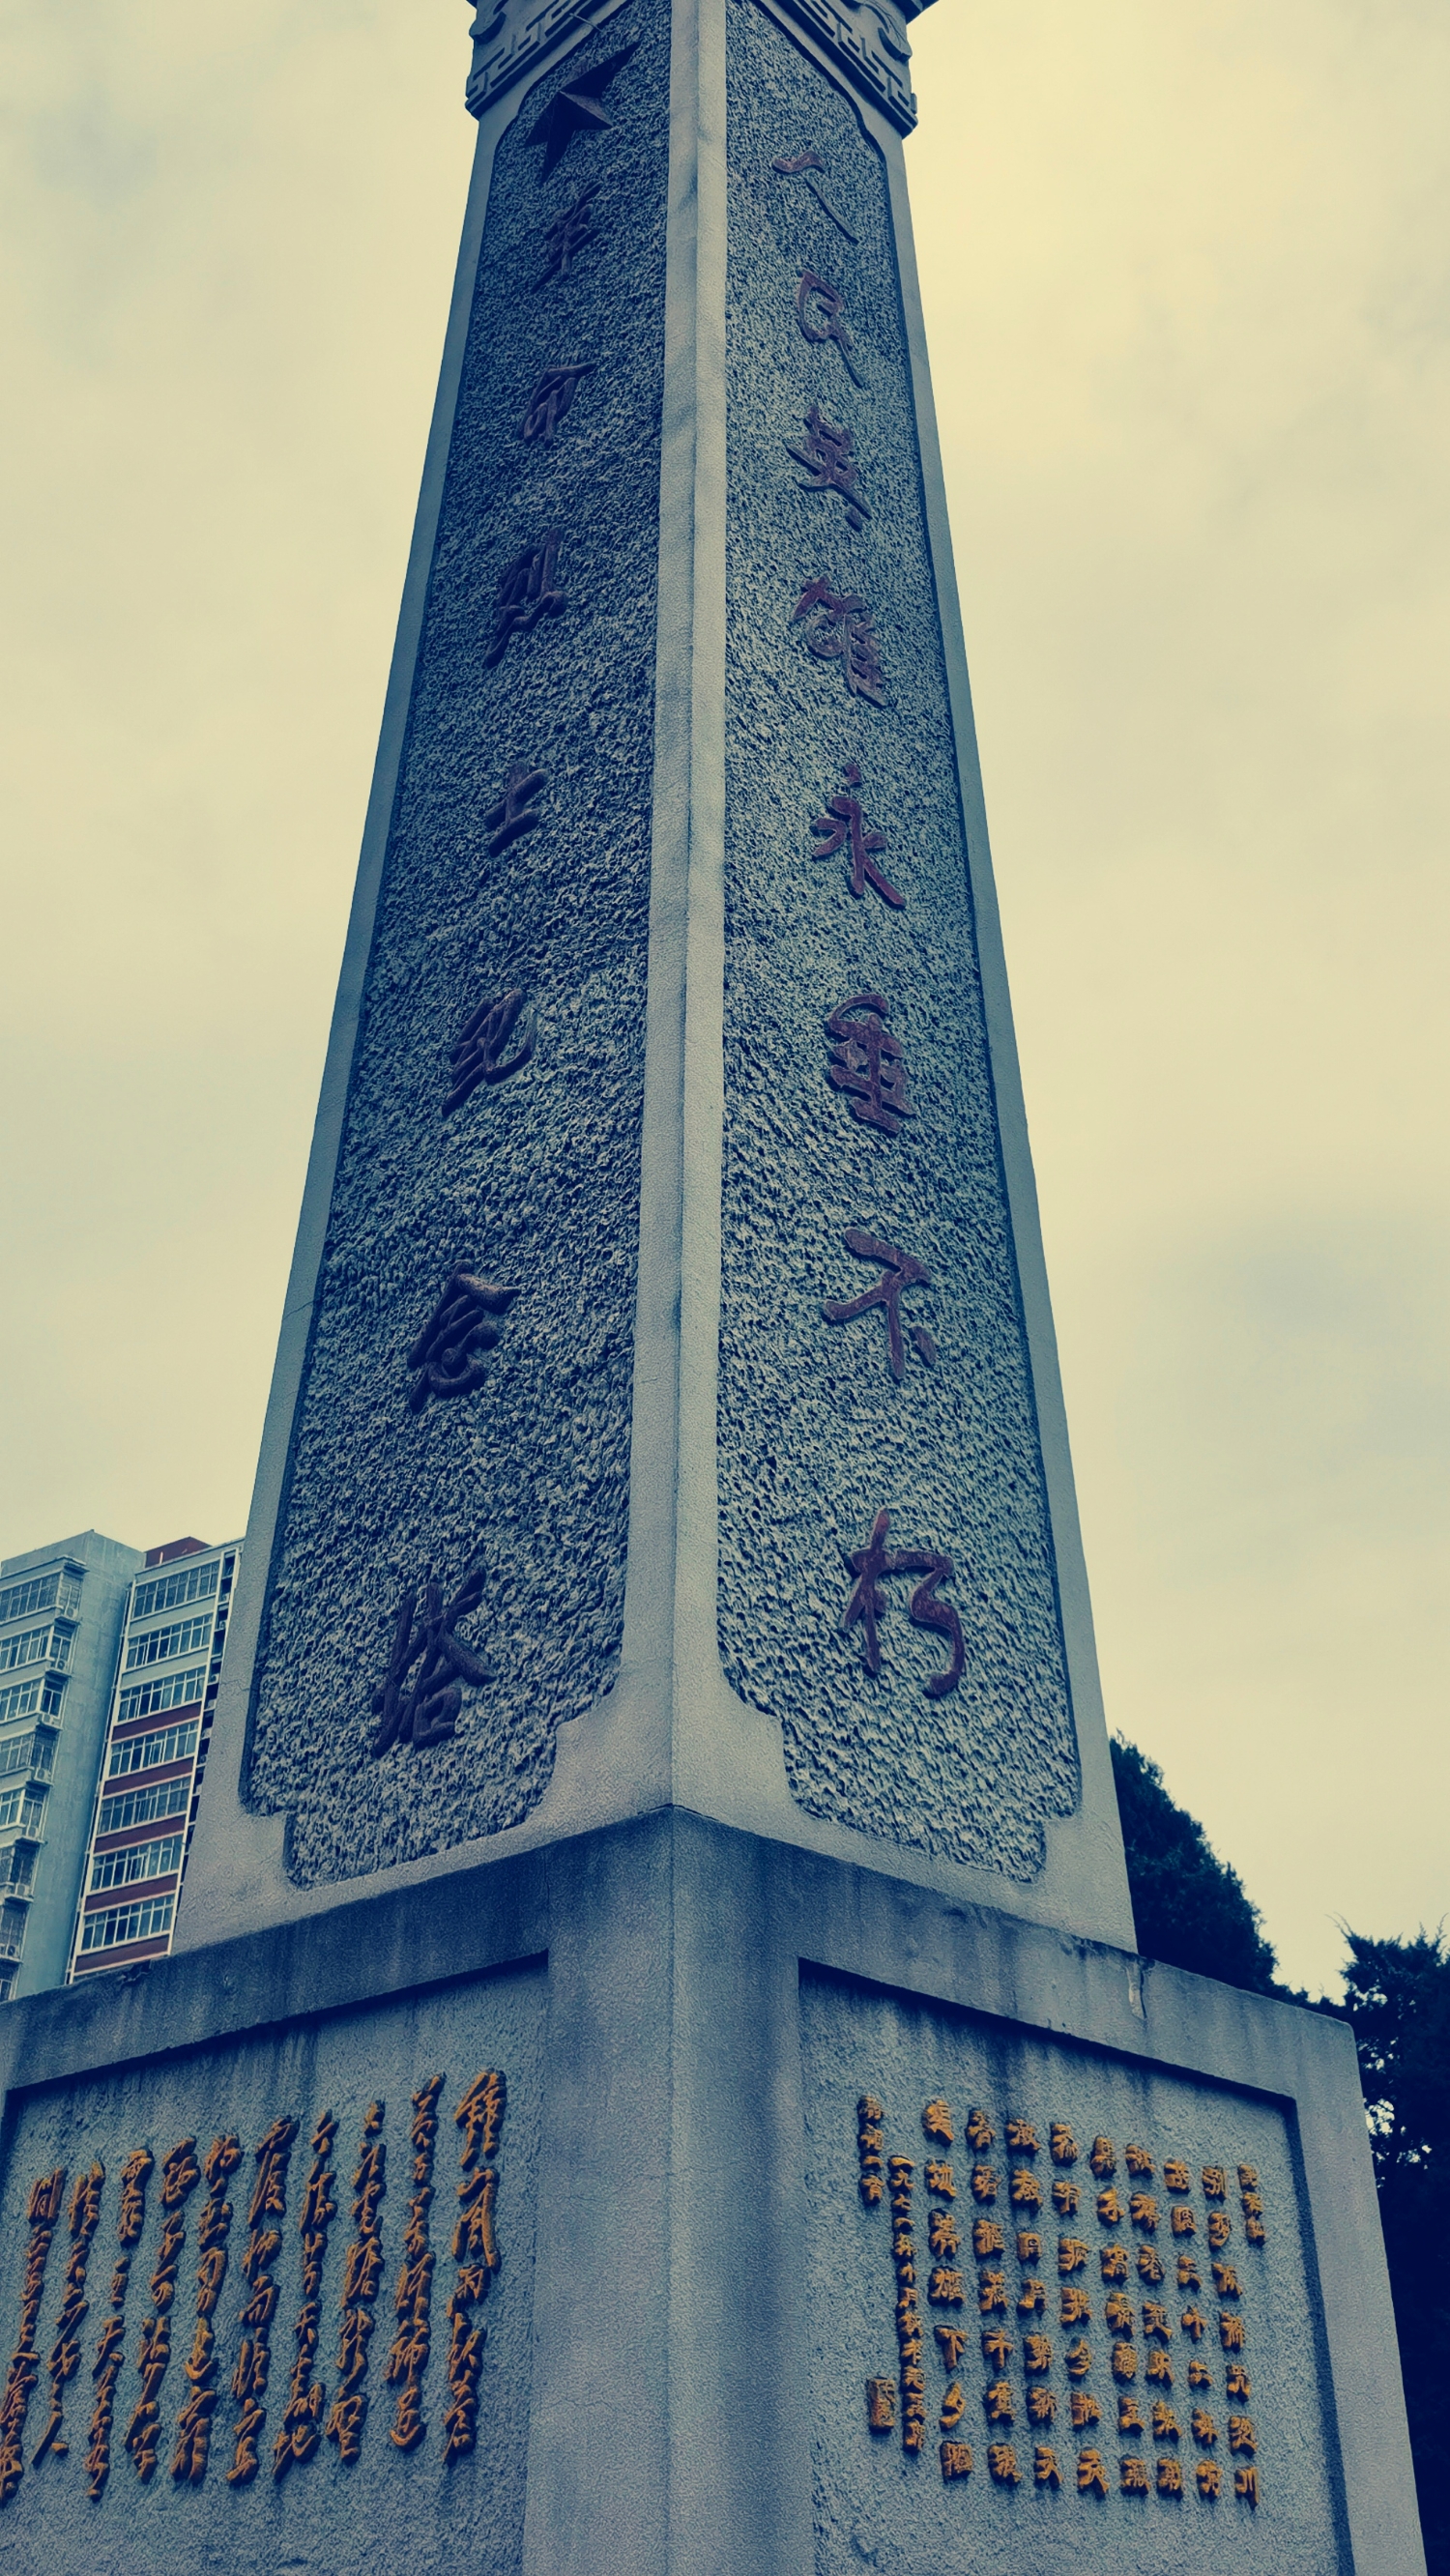 澄城县烈士陵园 |革命烈士纪念塔